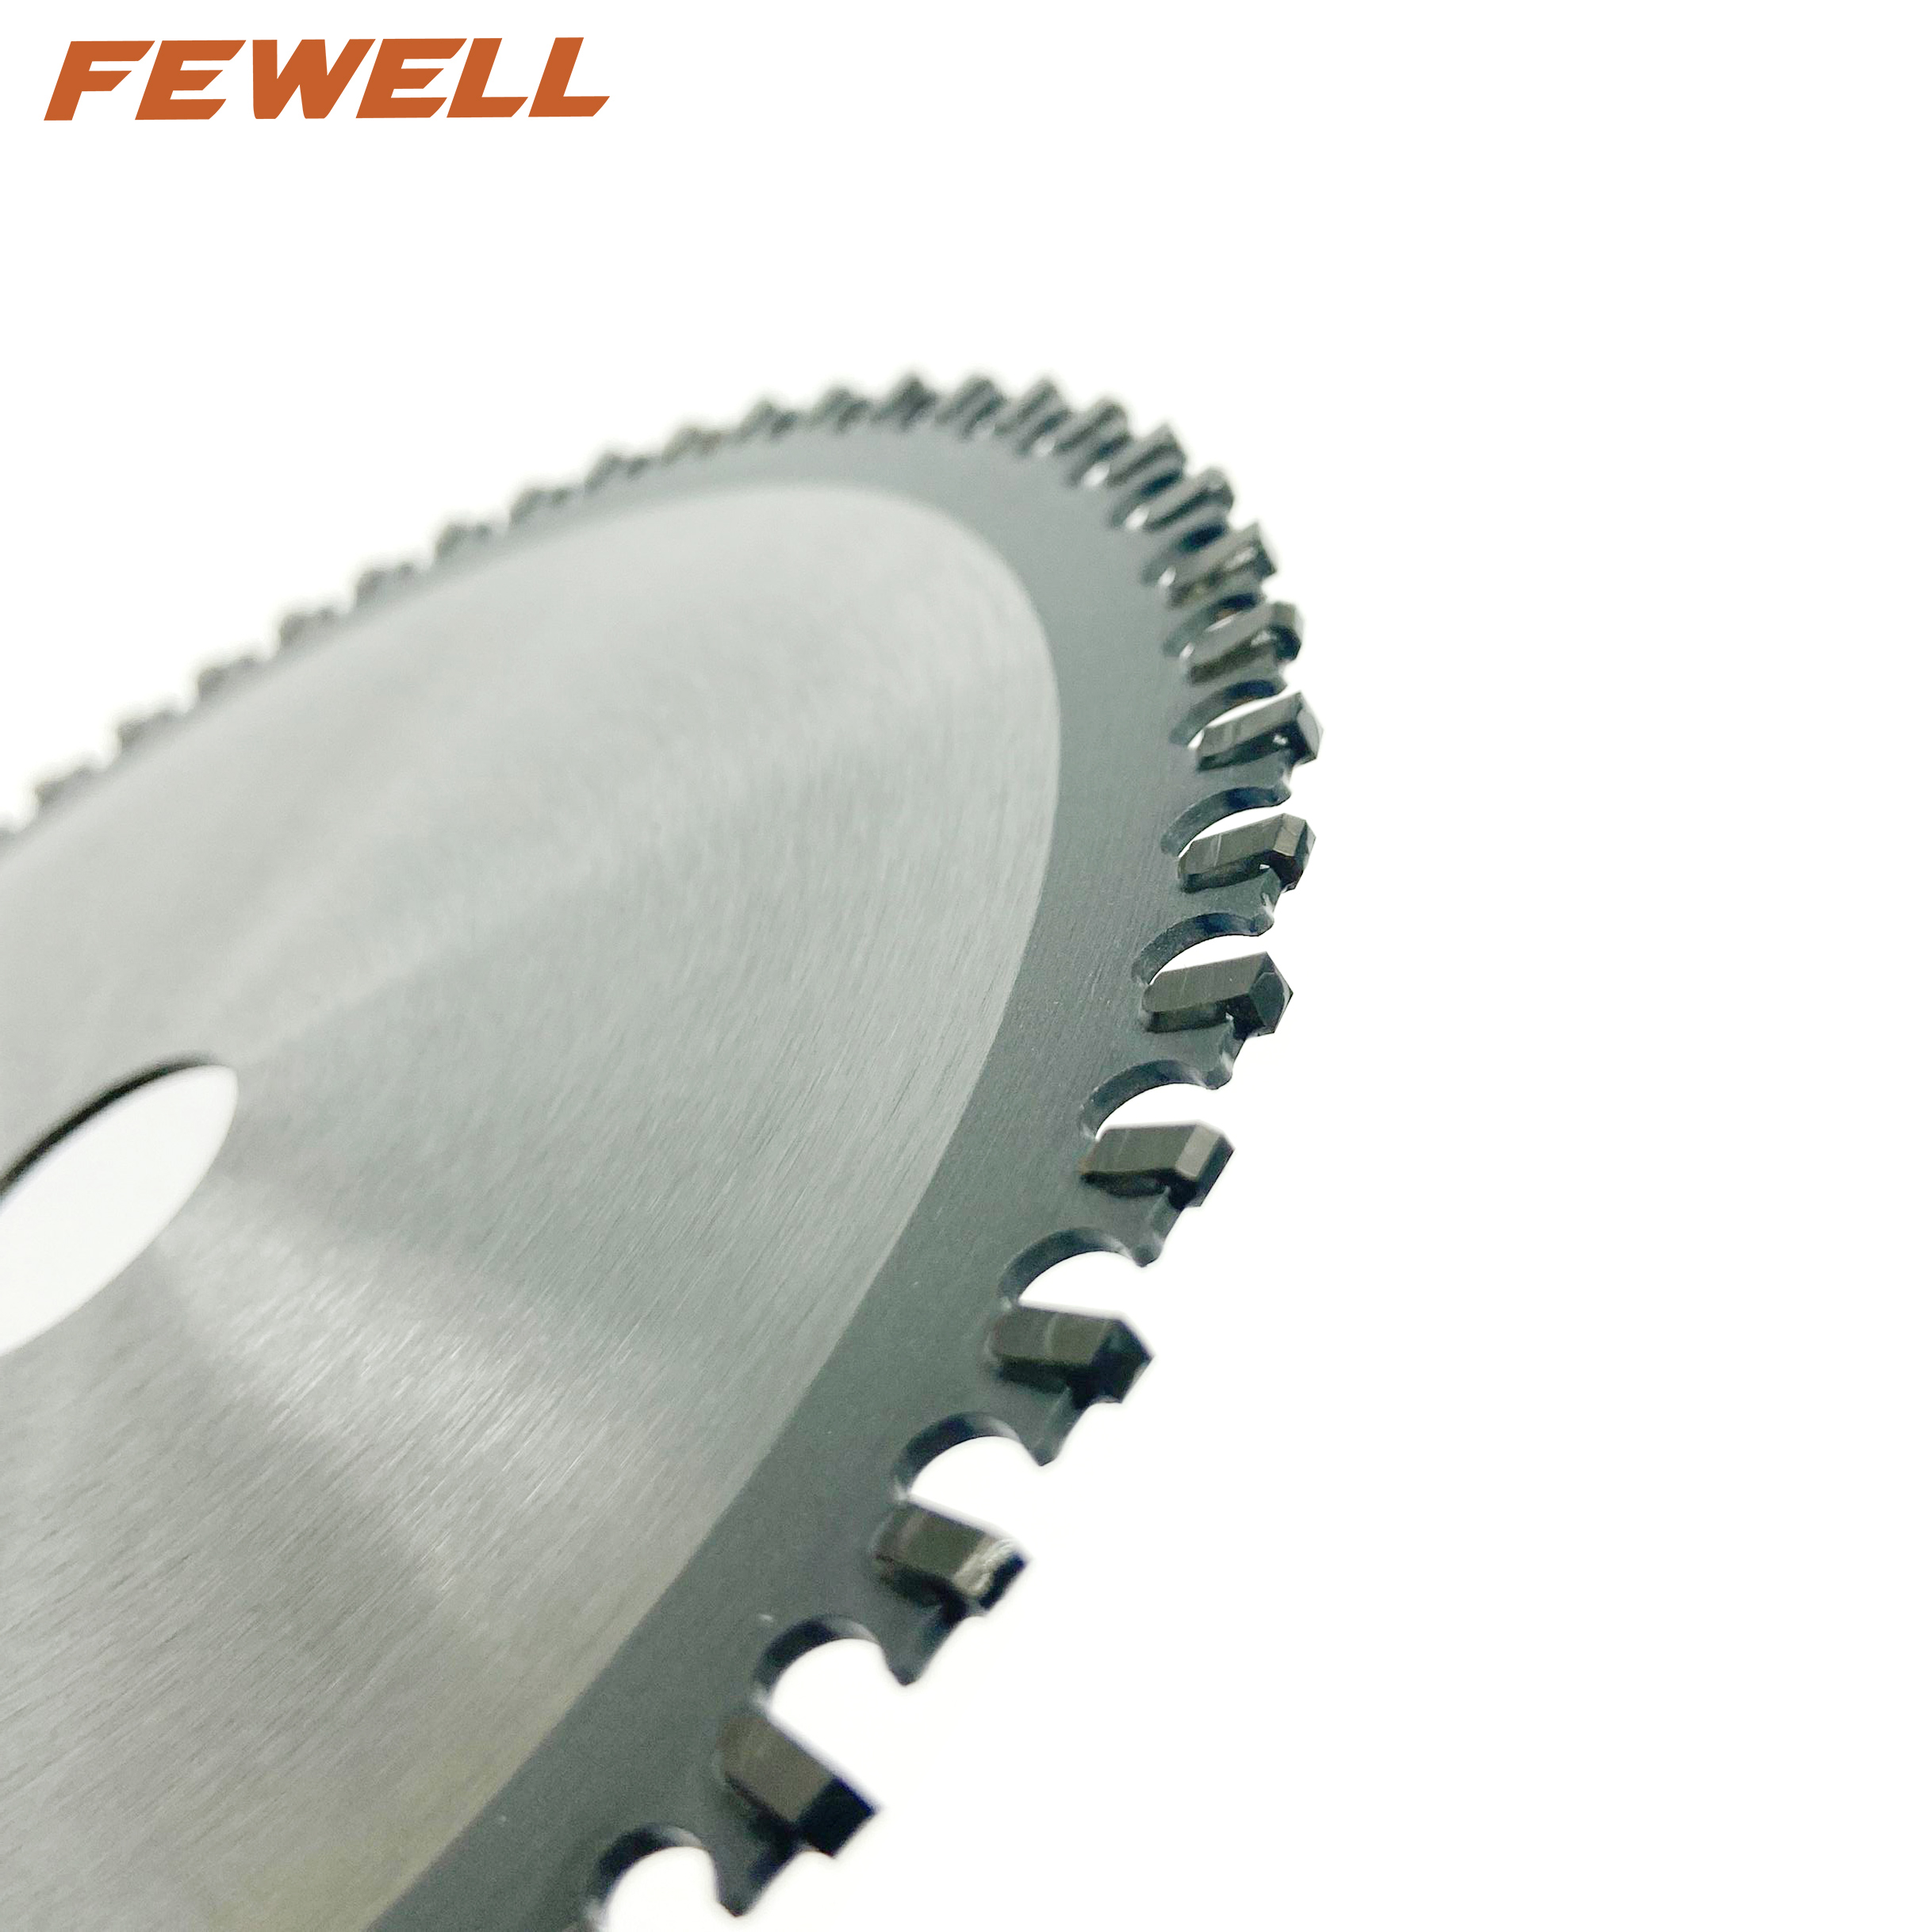 Hoja de sierra circular tct de exportación de 6 pulgadas 140 * 56T * 20 mm para cortar acero metálico